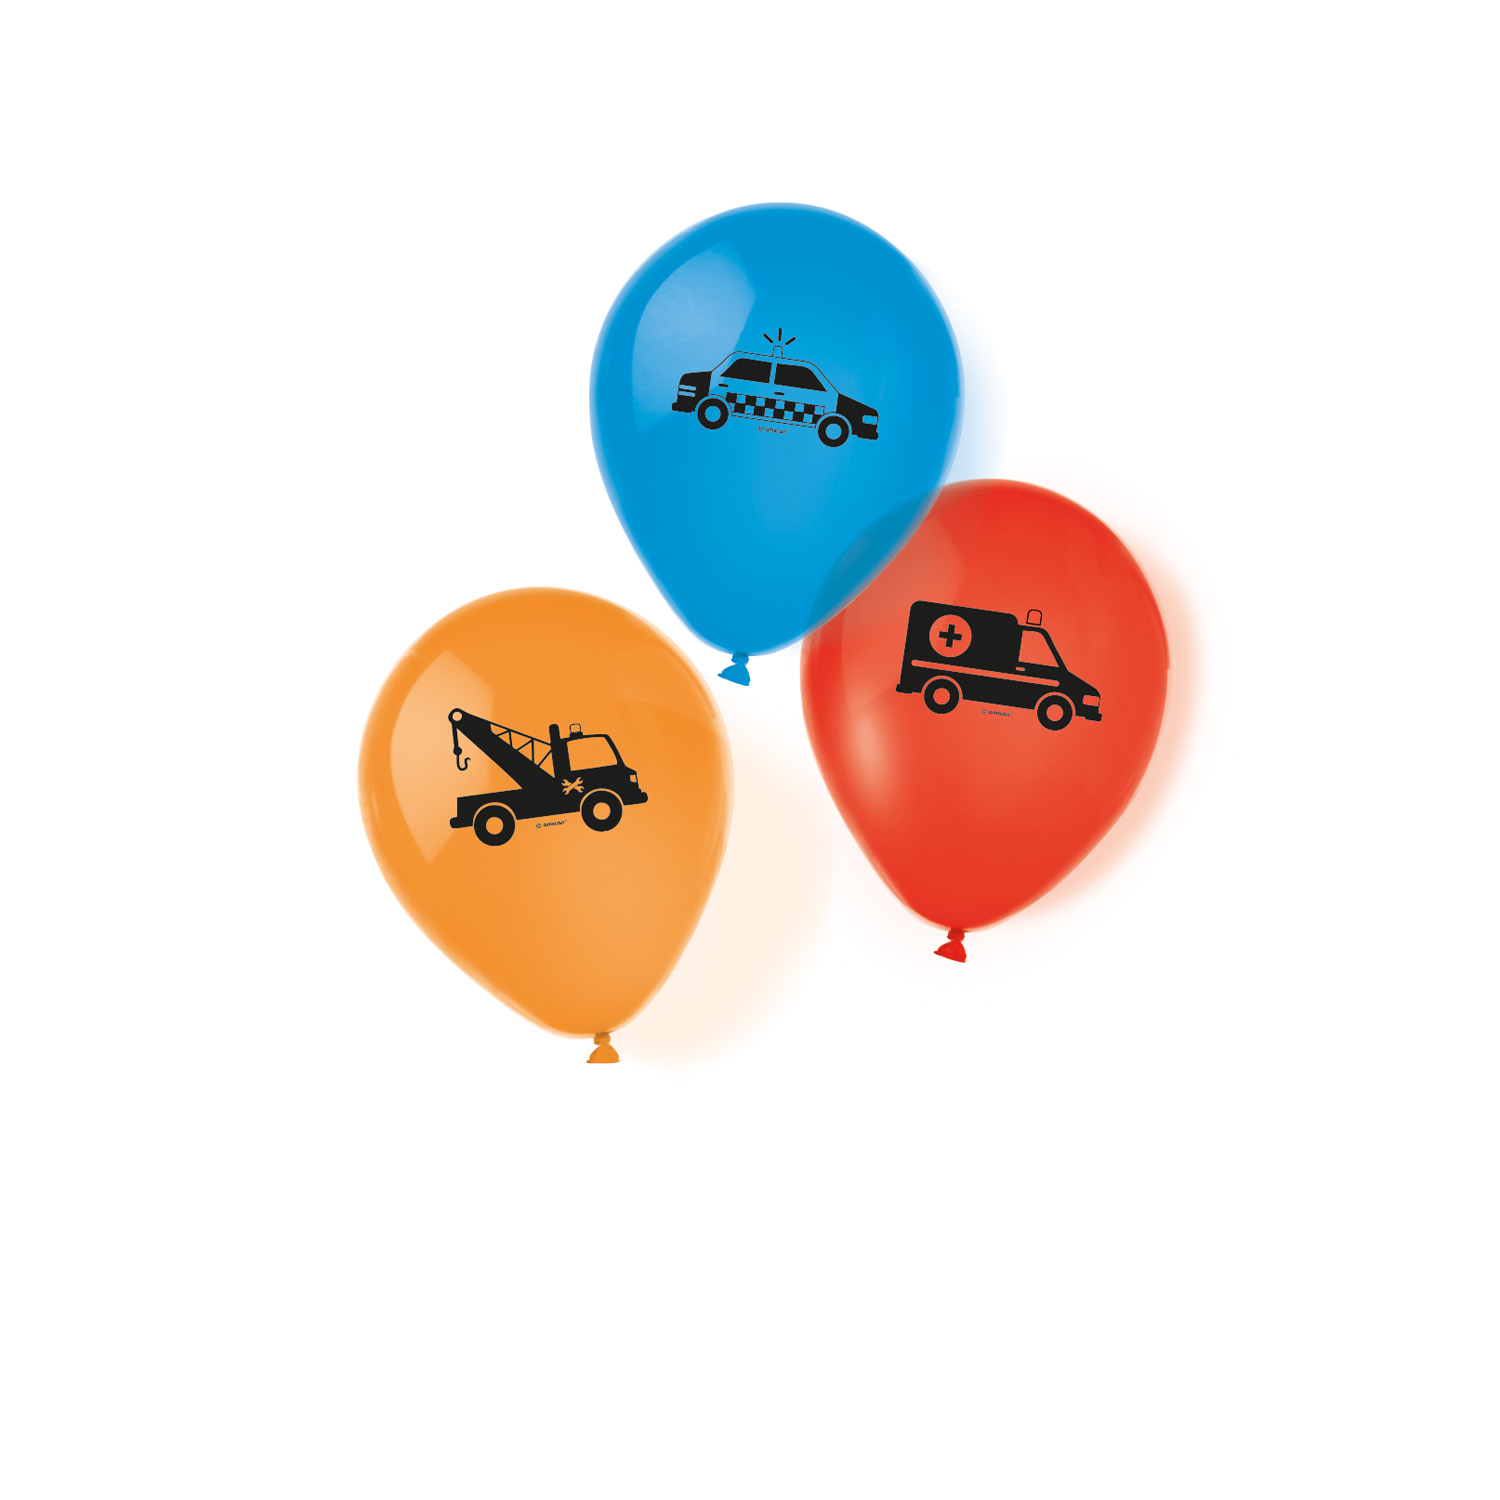 SALE Luftballons, Fahrzeuge im Straenverkehr, 6 Stck